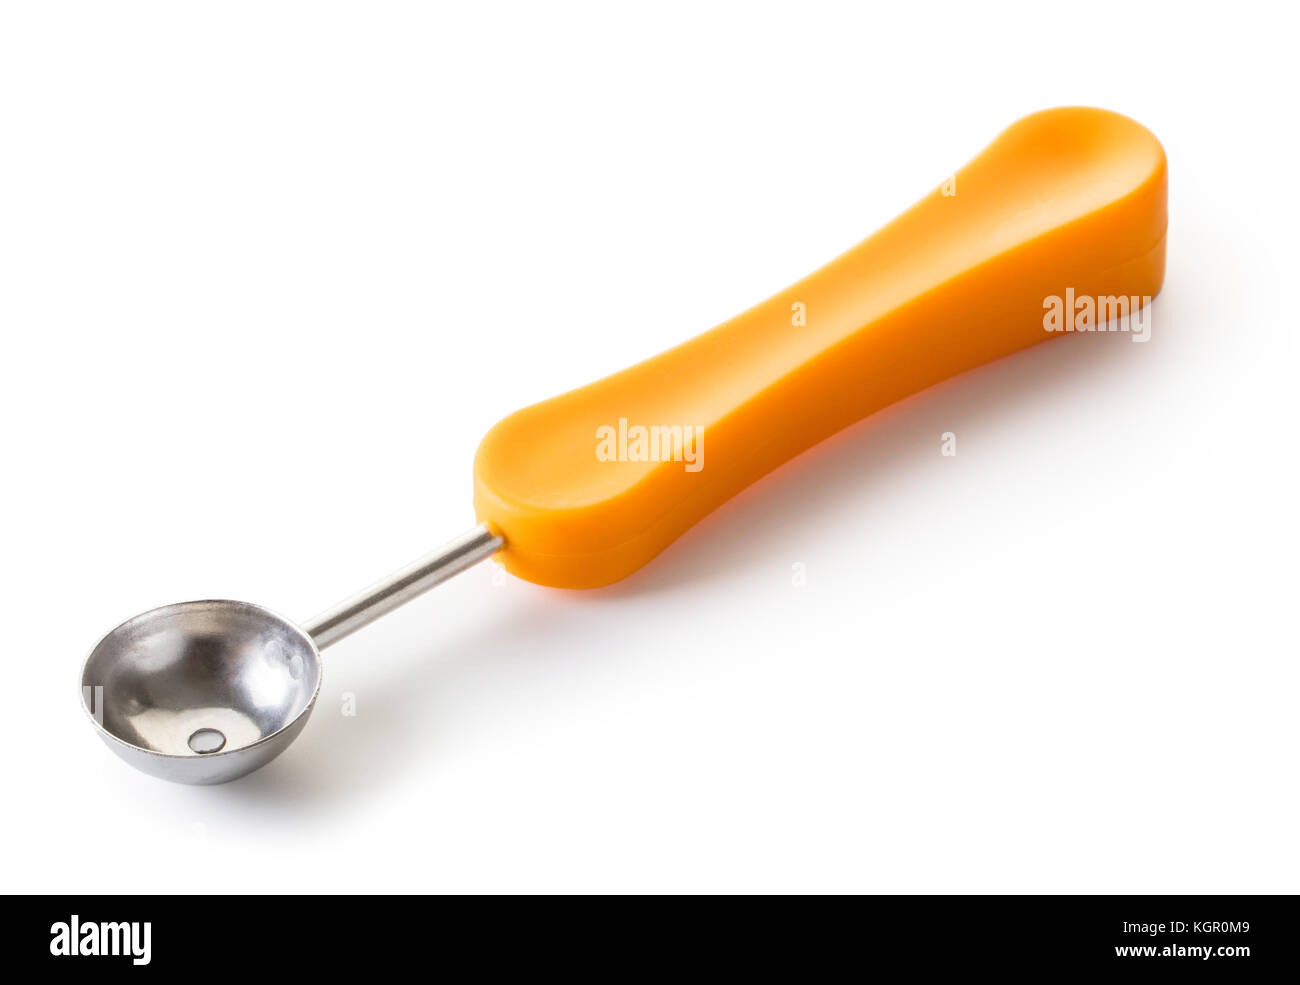 Küche Werkzeug zum Schneiden von Kugeln aus Obst und Gemüse isoliert auf  weißem Hintergrund Stockfotografie - Alamy